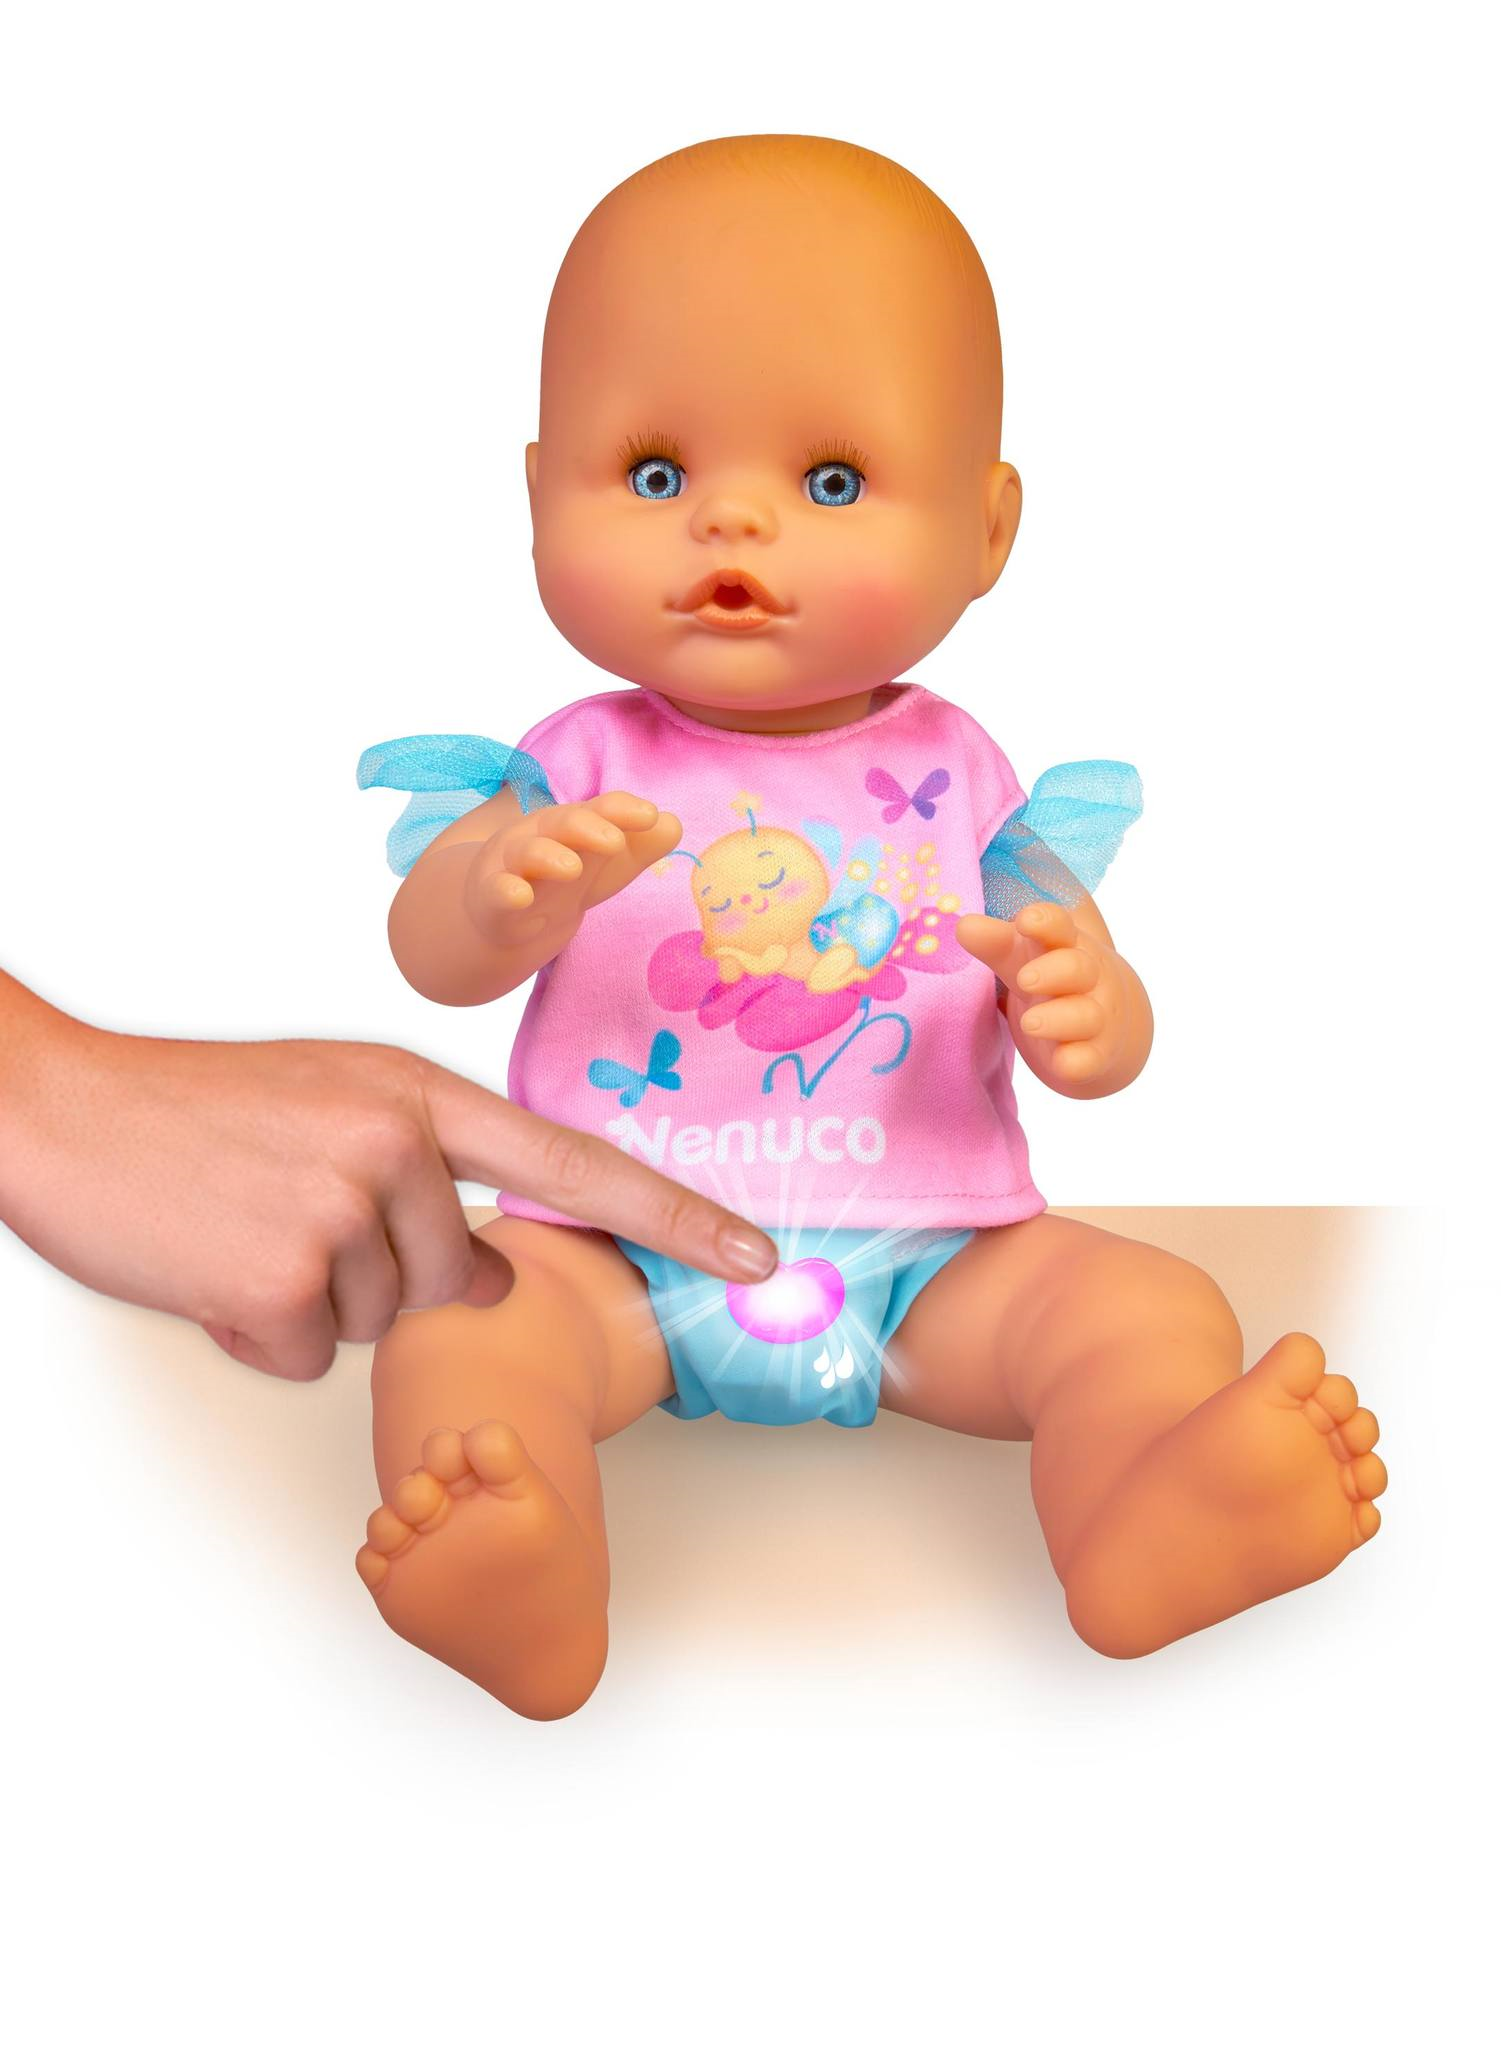 Nenuco pannolino magico, bambola 35 cm con pannolino con luci, inclusi accessori. - NENUCO